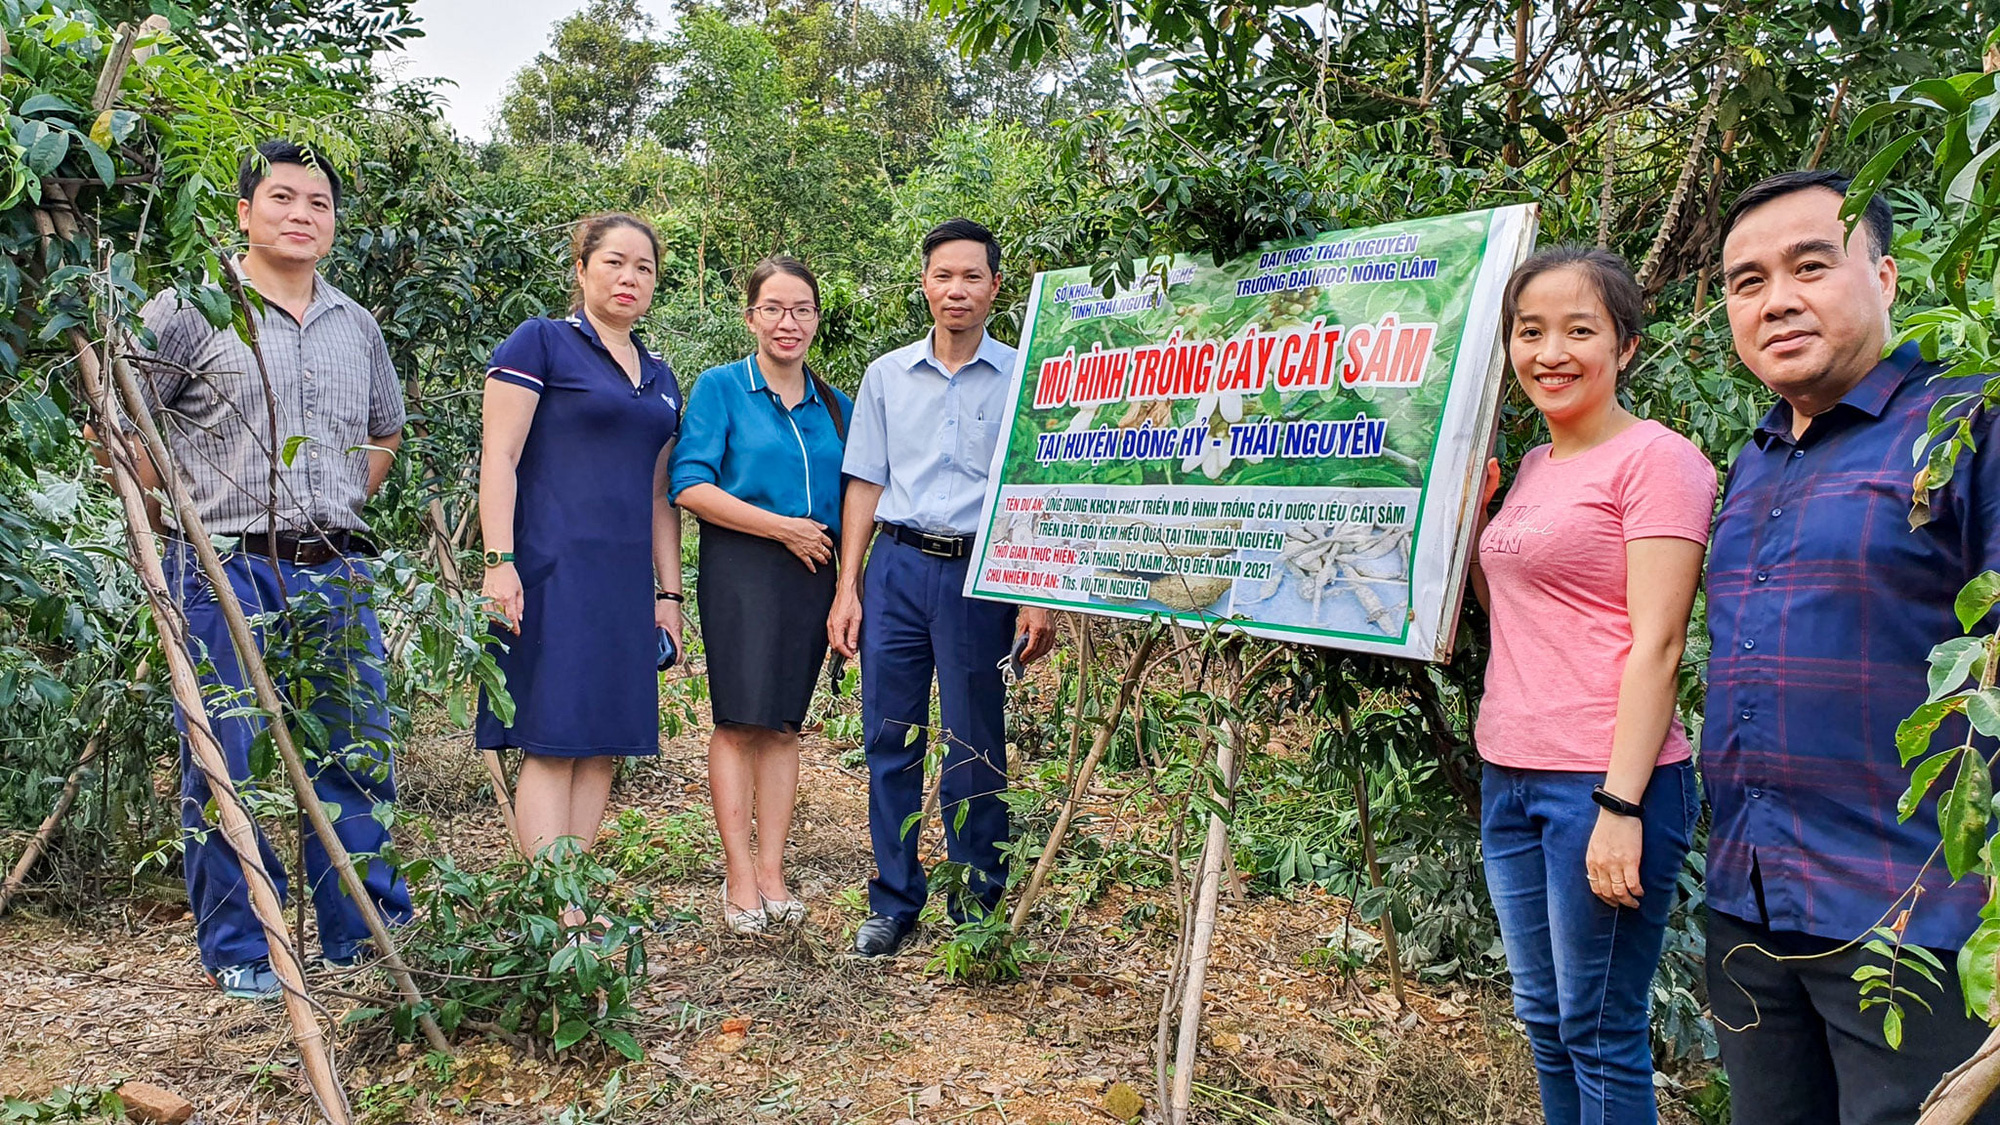 Thái Nguyên: Phát triển mô hình trồng cây dược liệu Cát sâm trên đất đồi kém hiệu quả - Ảnh 1.